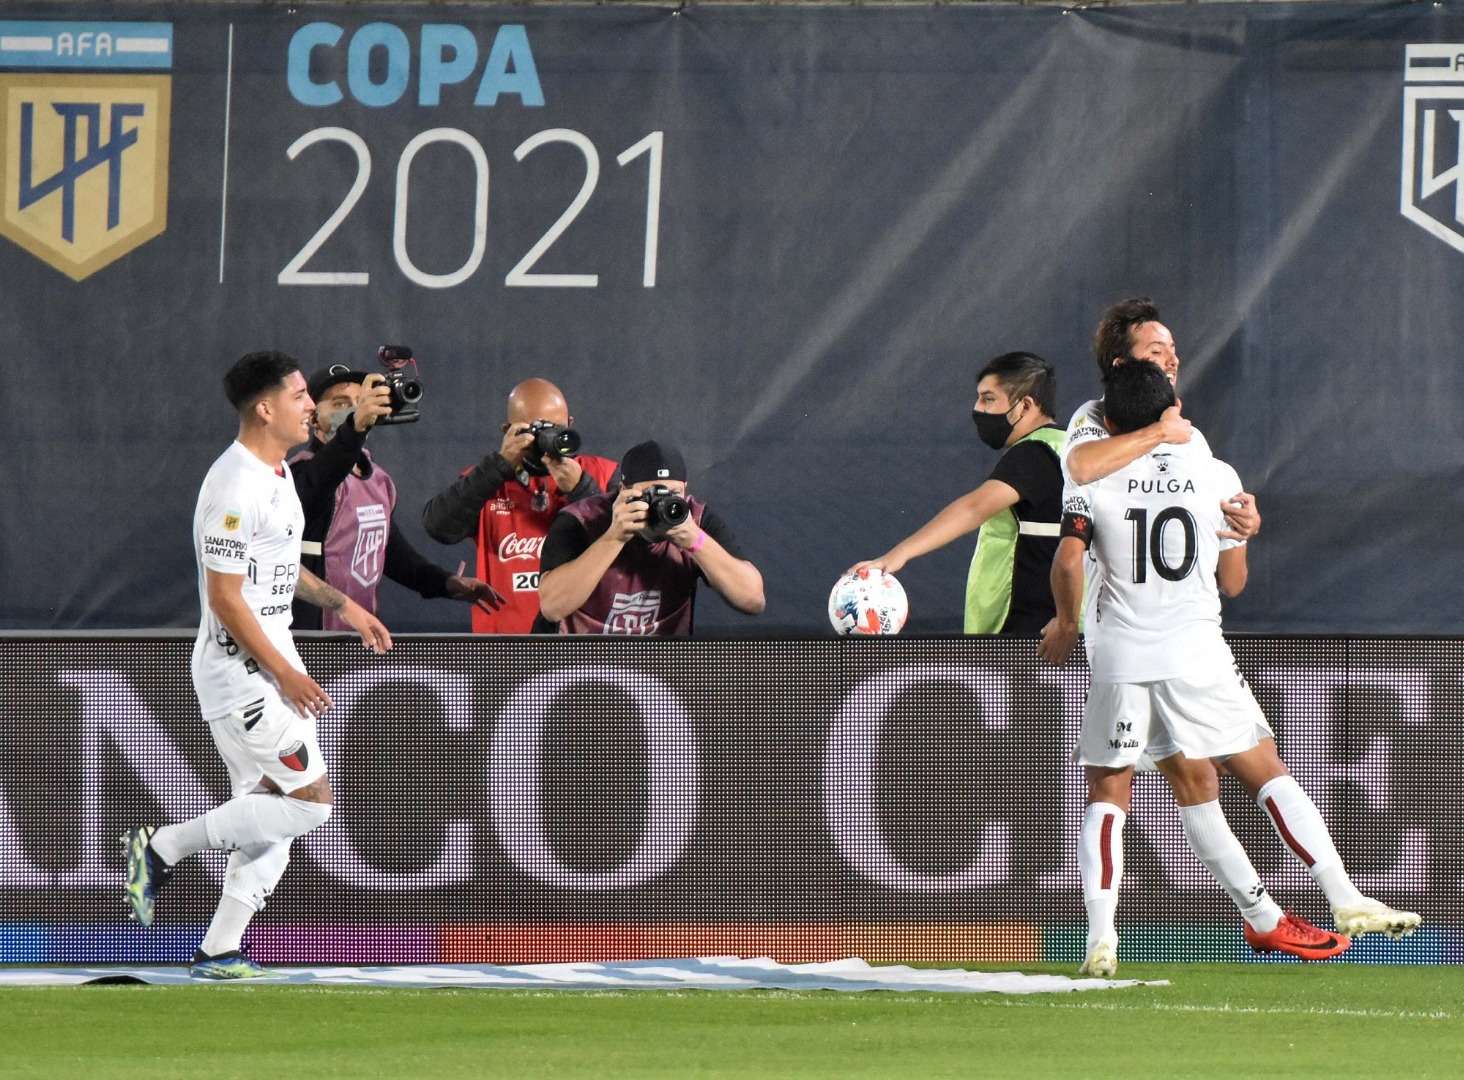 De la mano del “Pulga”, Colón venció a Independiente y jugará la final